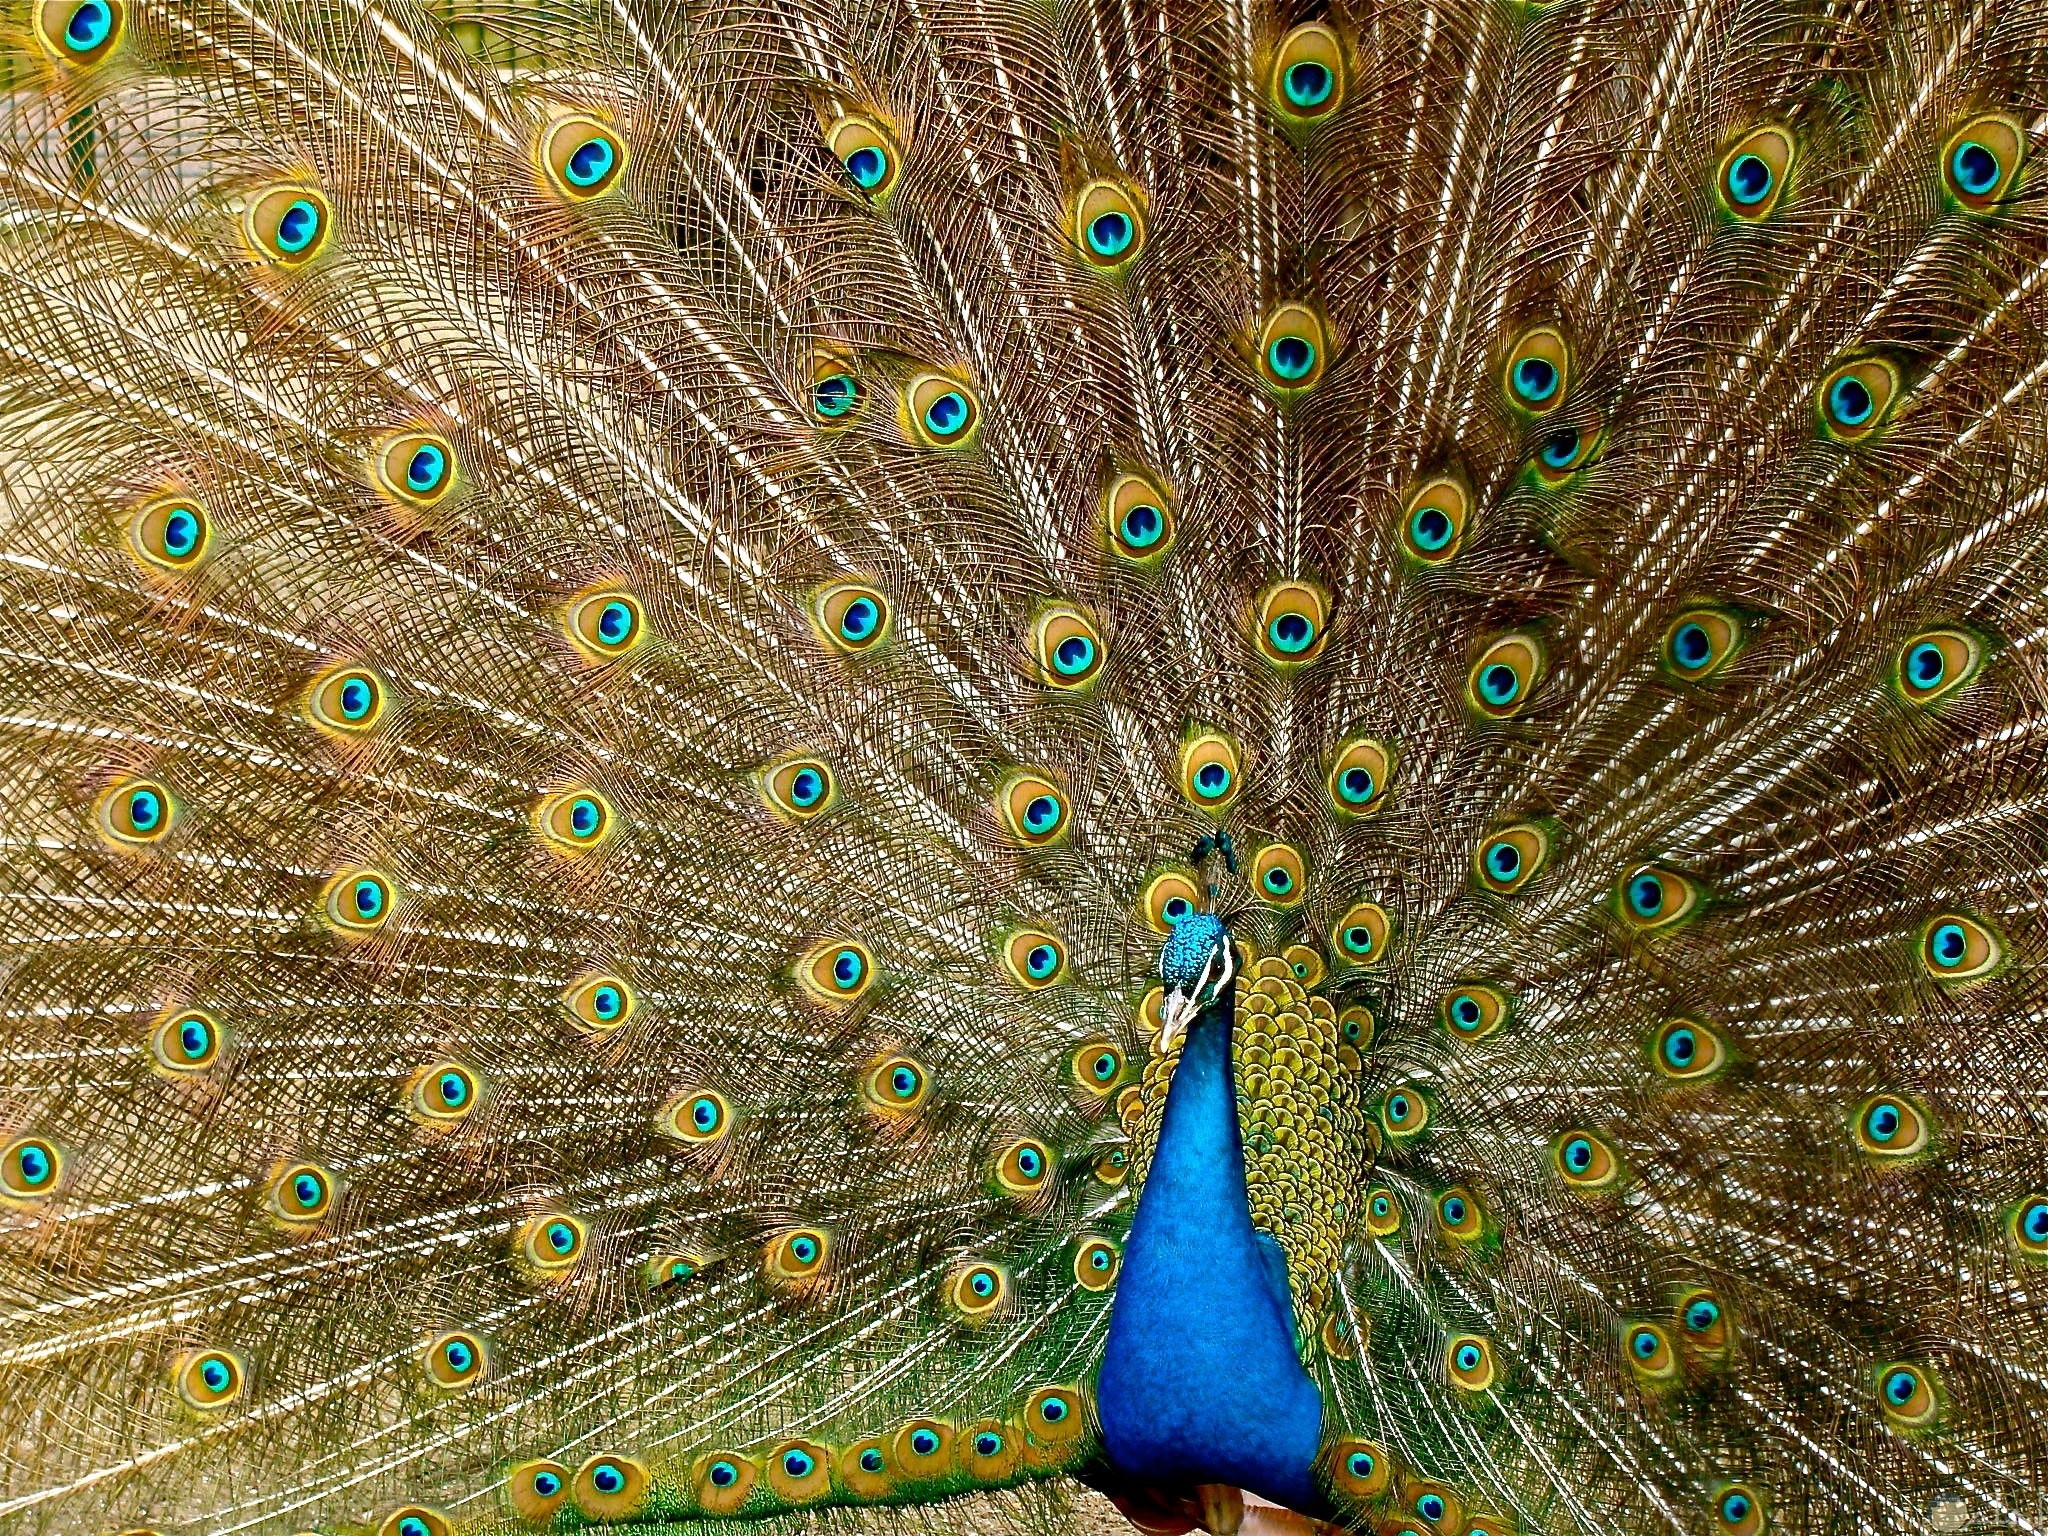 صورة جميلة جدا لحيوان الطاووس الأزرق مميزة وحلوة